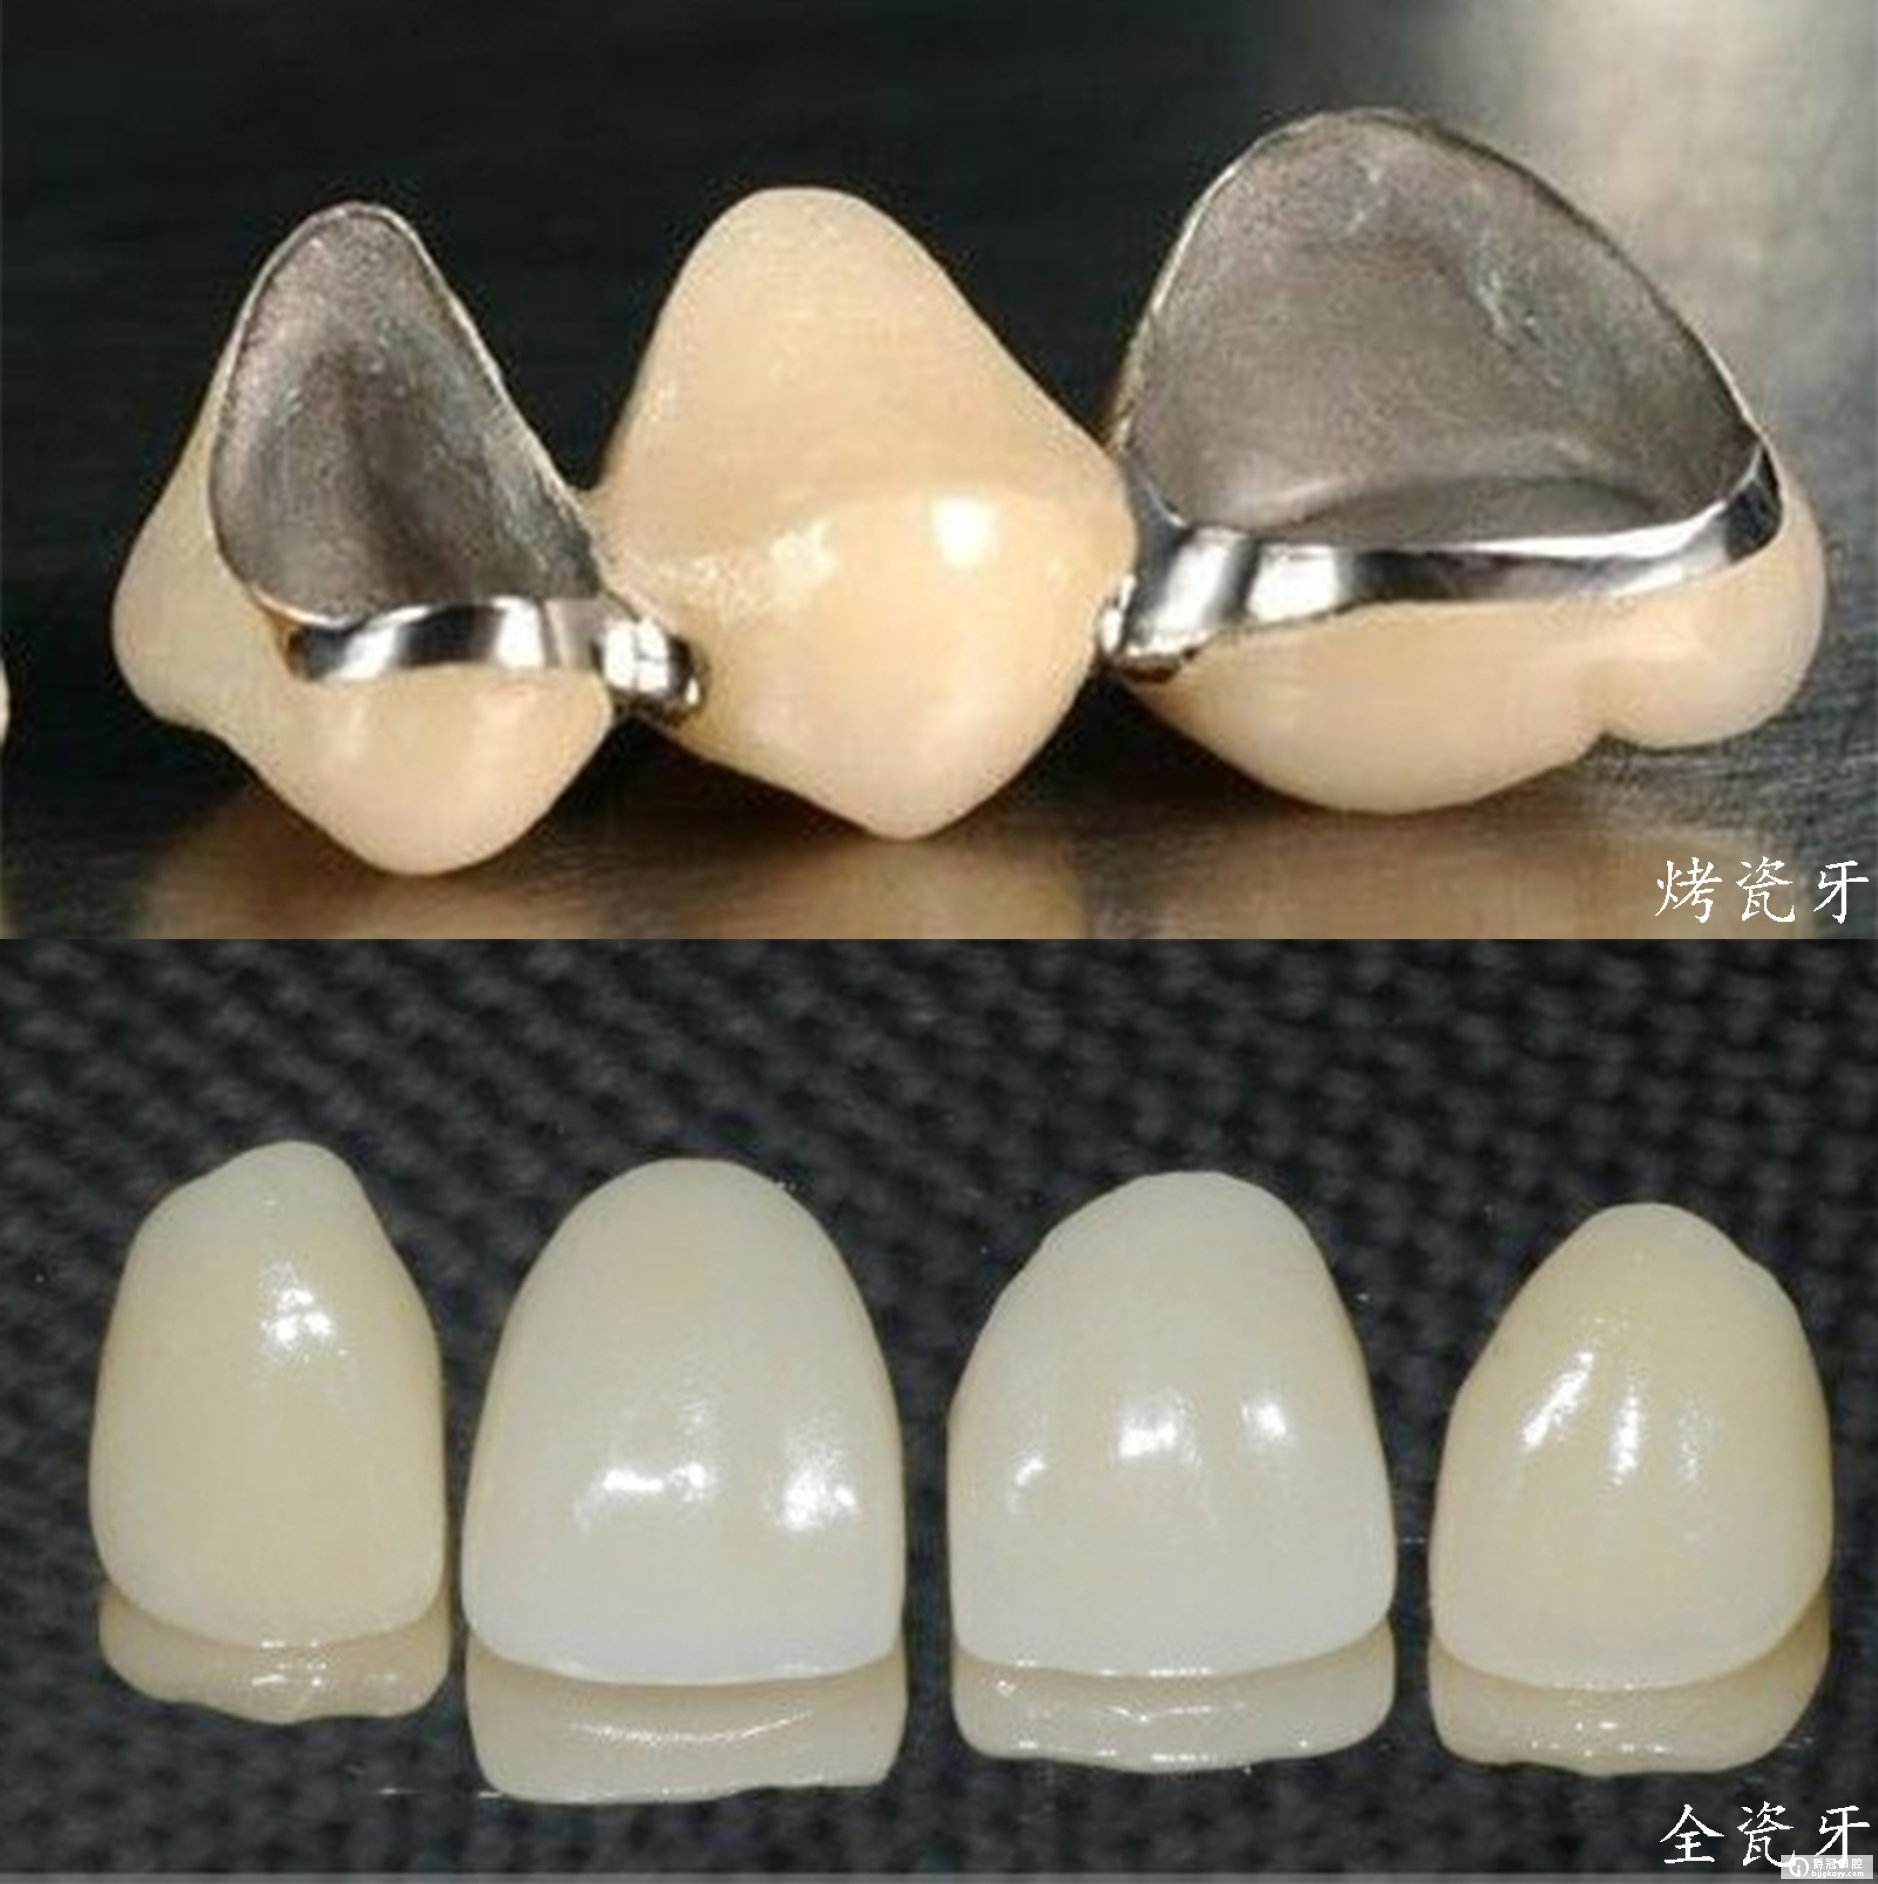 牙齿缺损怎么办?烤瓷牙pk全瓷牙,你会选择哪一种?